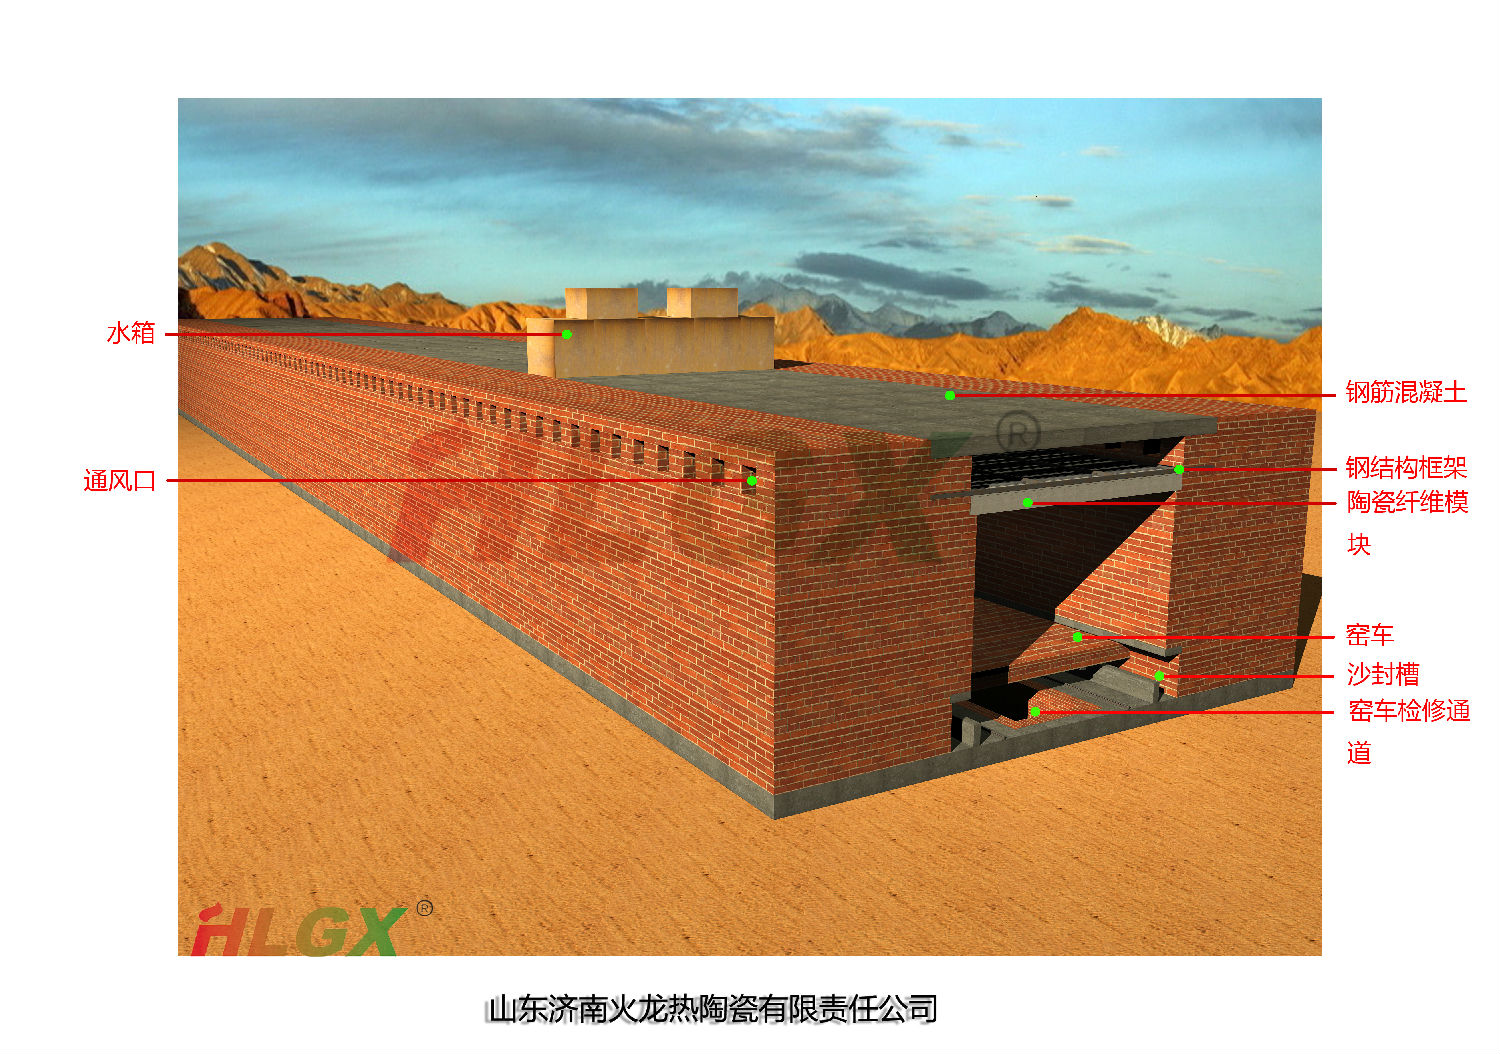 隧道窑陶瓷纤维平吊顶示意图-火龙耐材提供